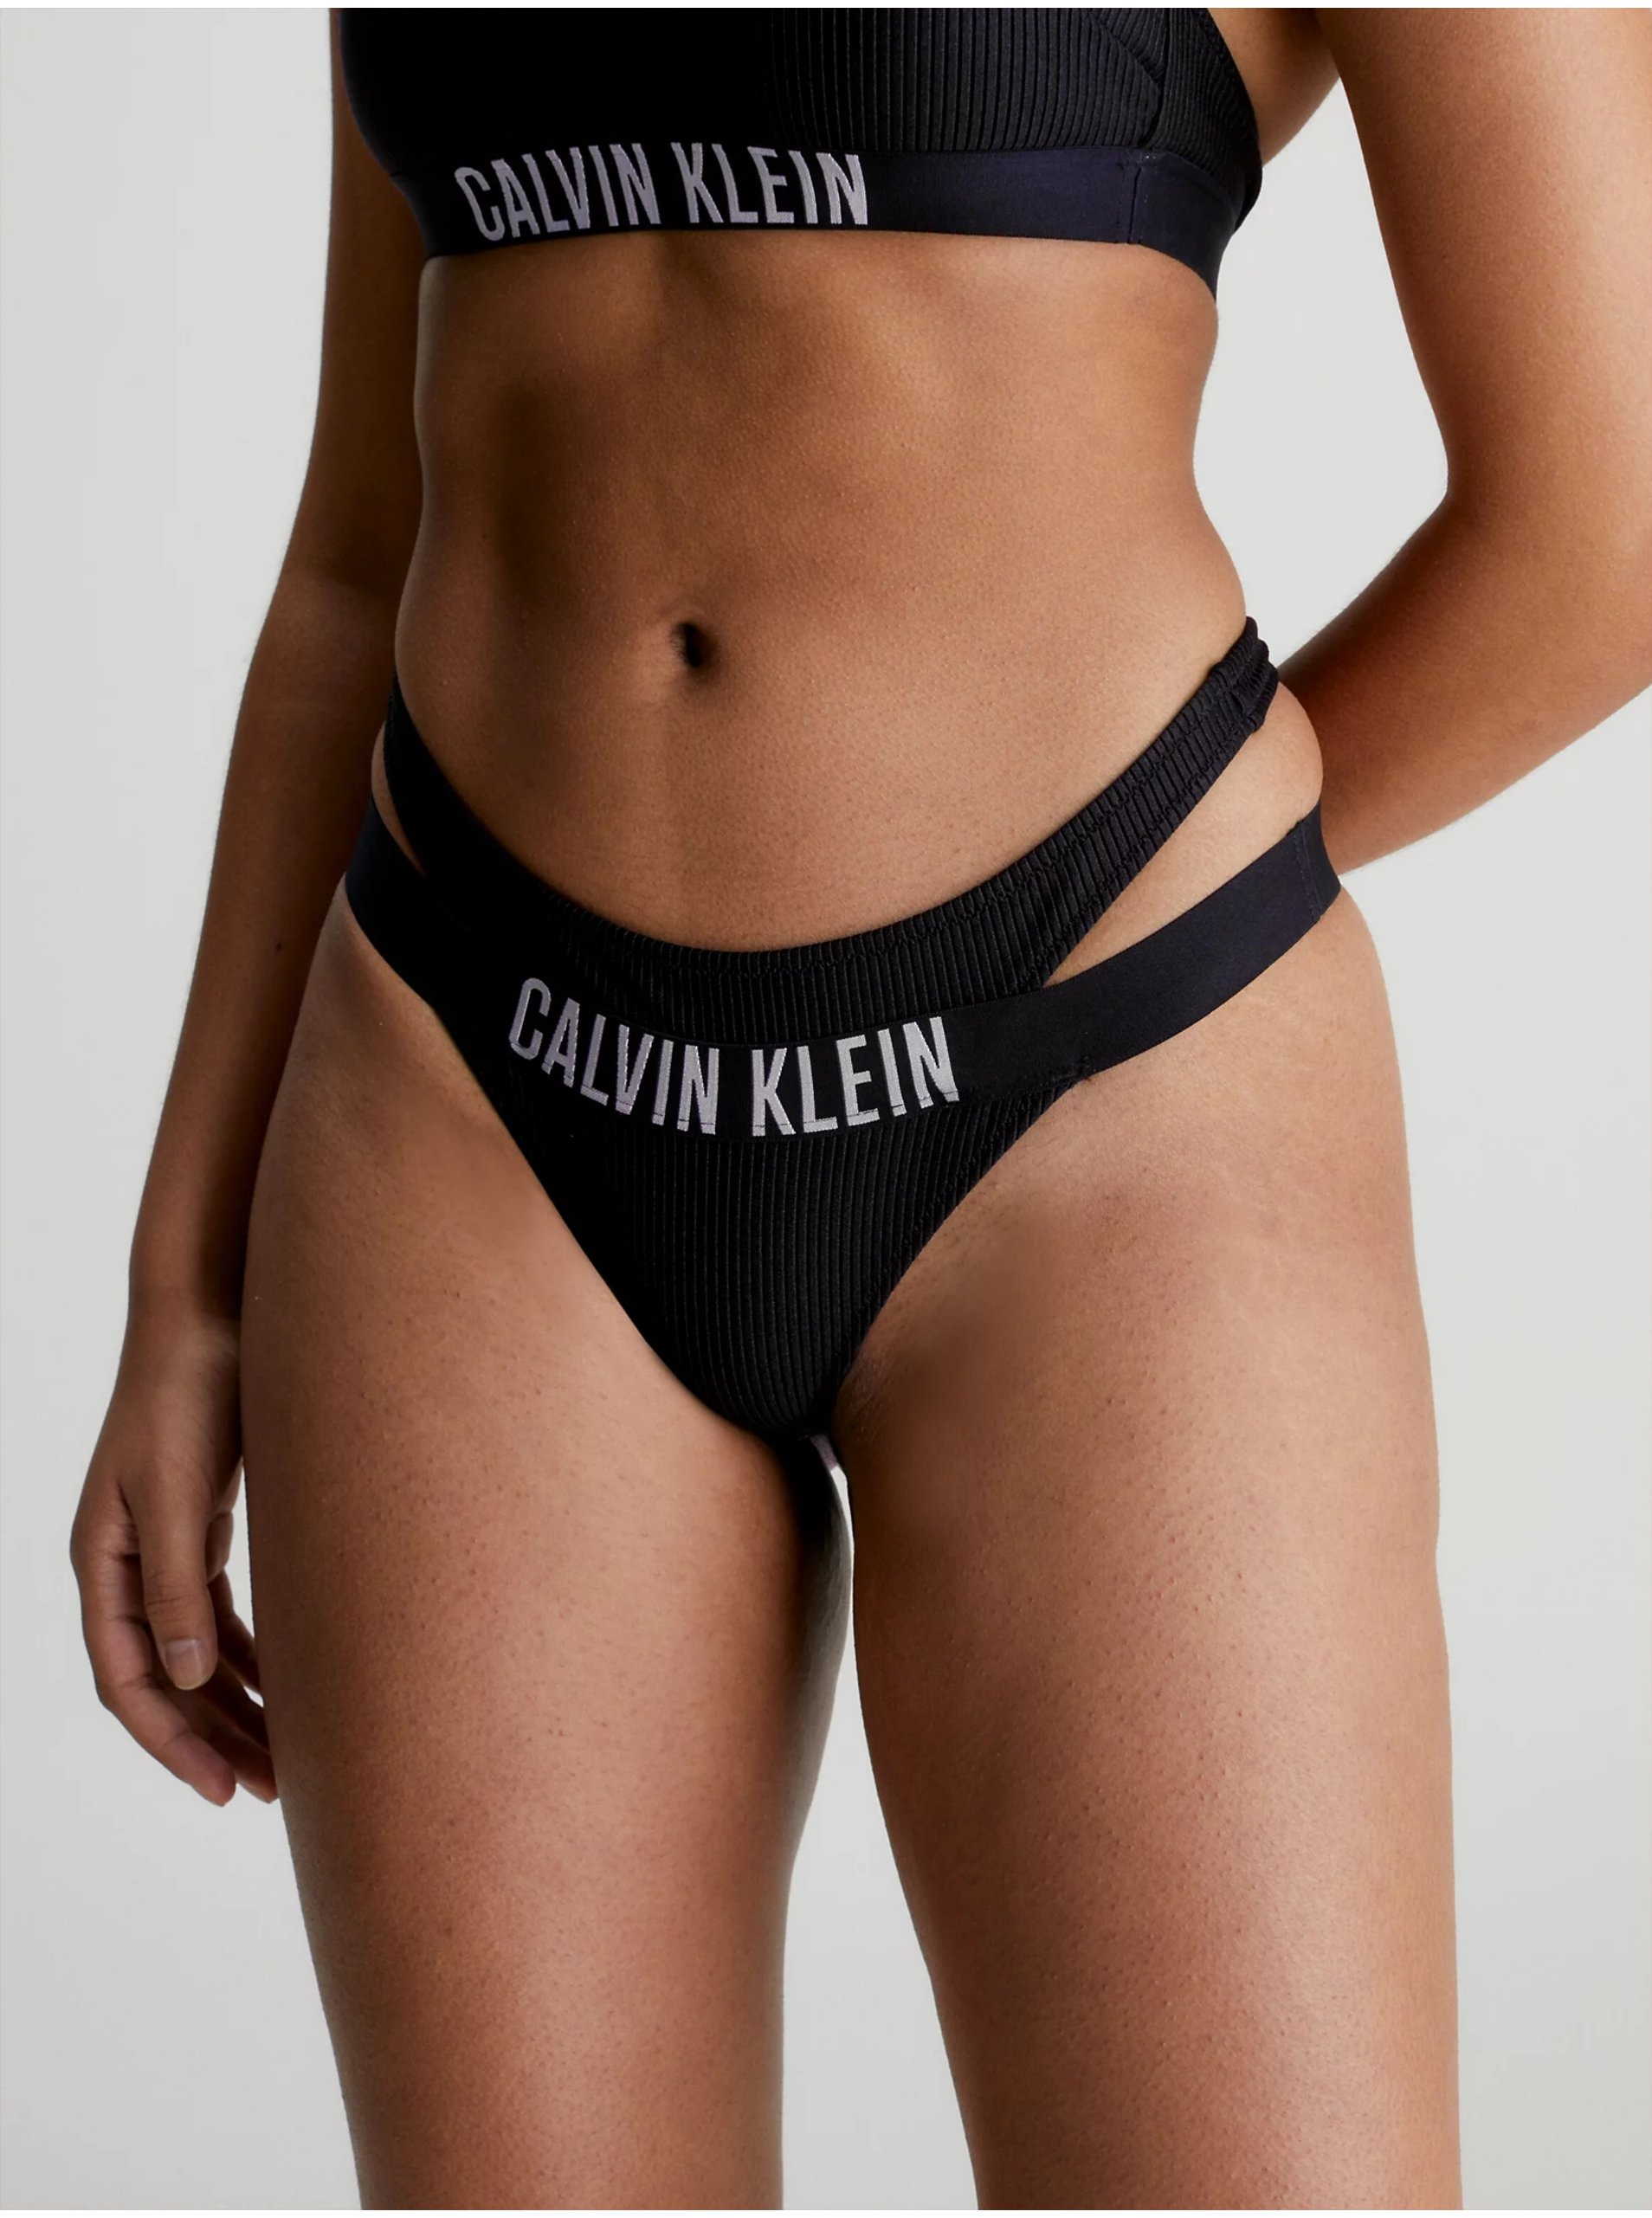 Lacno Čierny dámsky spodný diel plaviek Calvin Klein Underwear